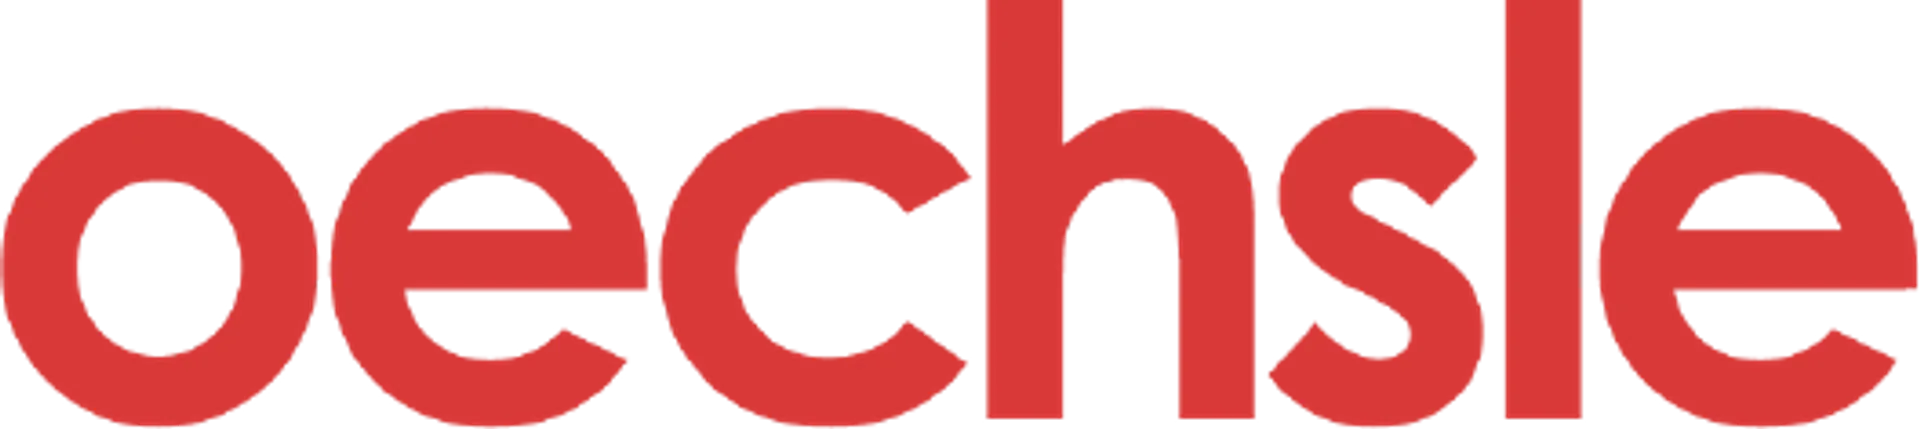 Logo de Oechsle